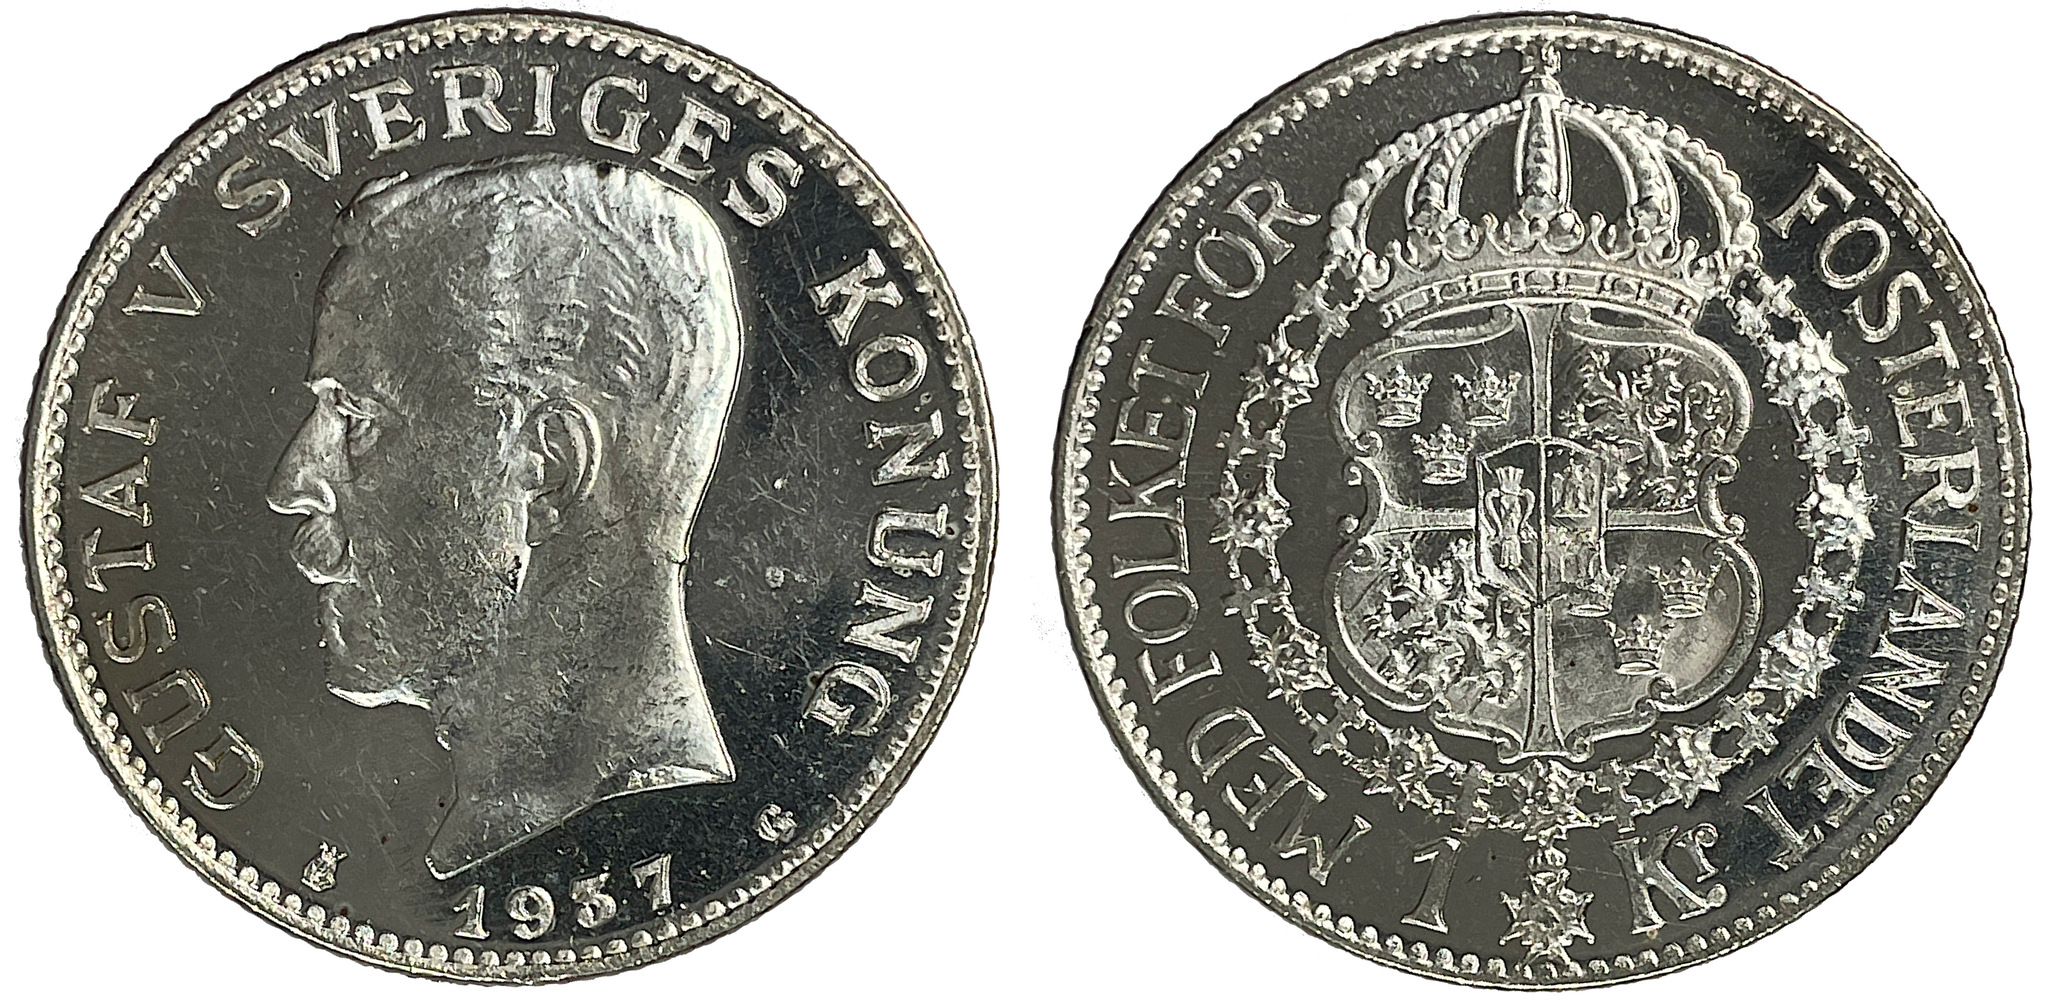 Gustav V, 1 Krona 1937 - Djup spegelkaraktär